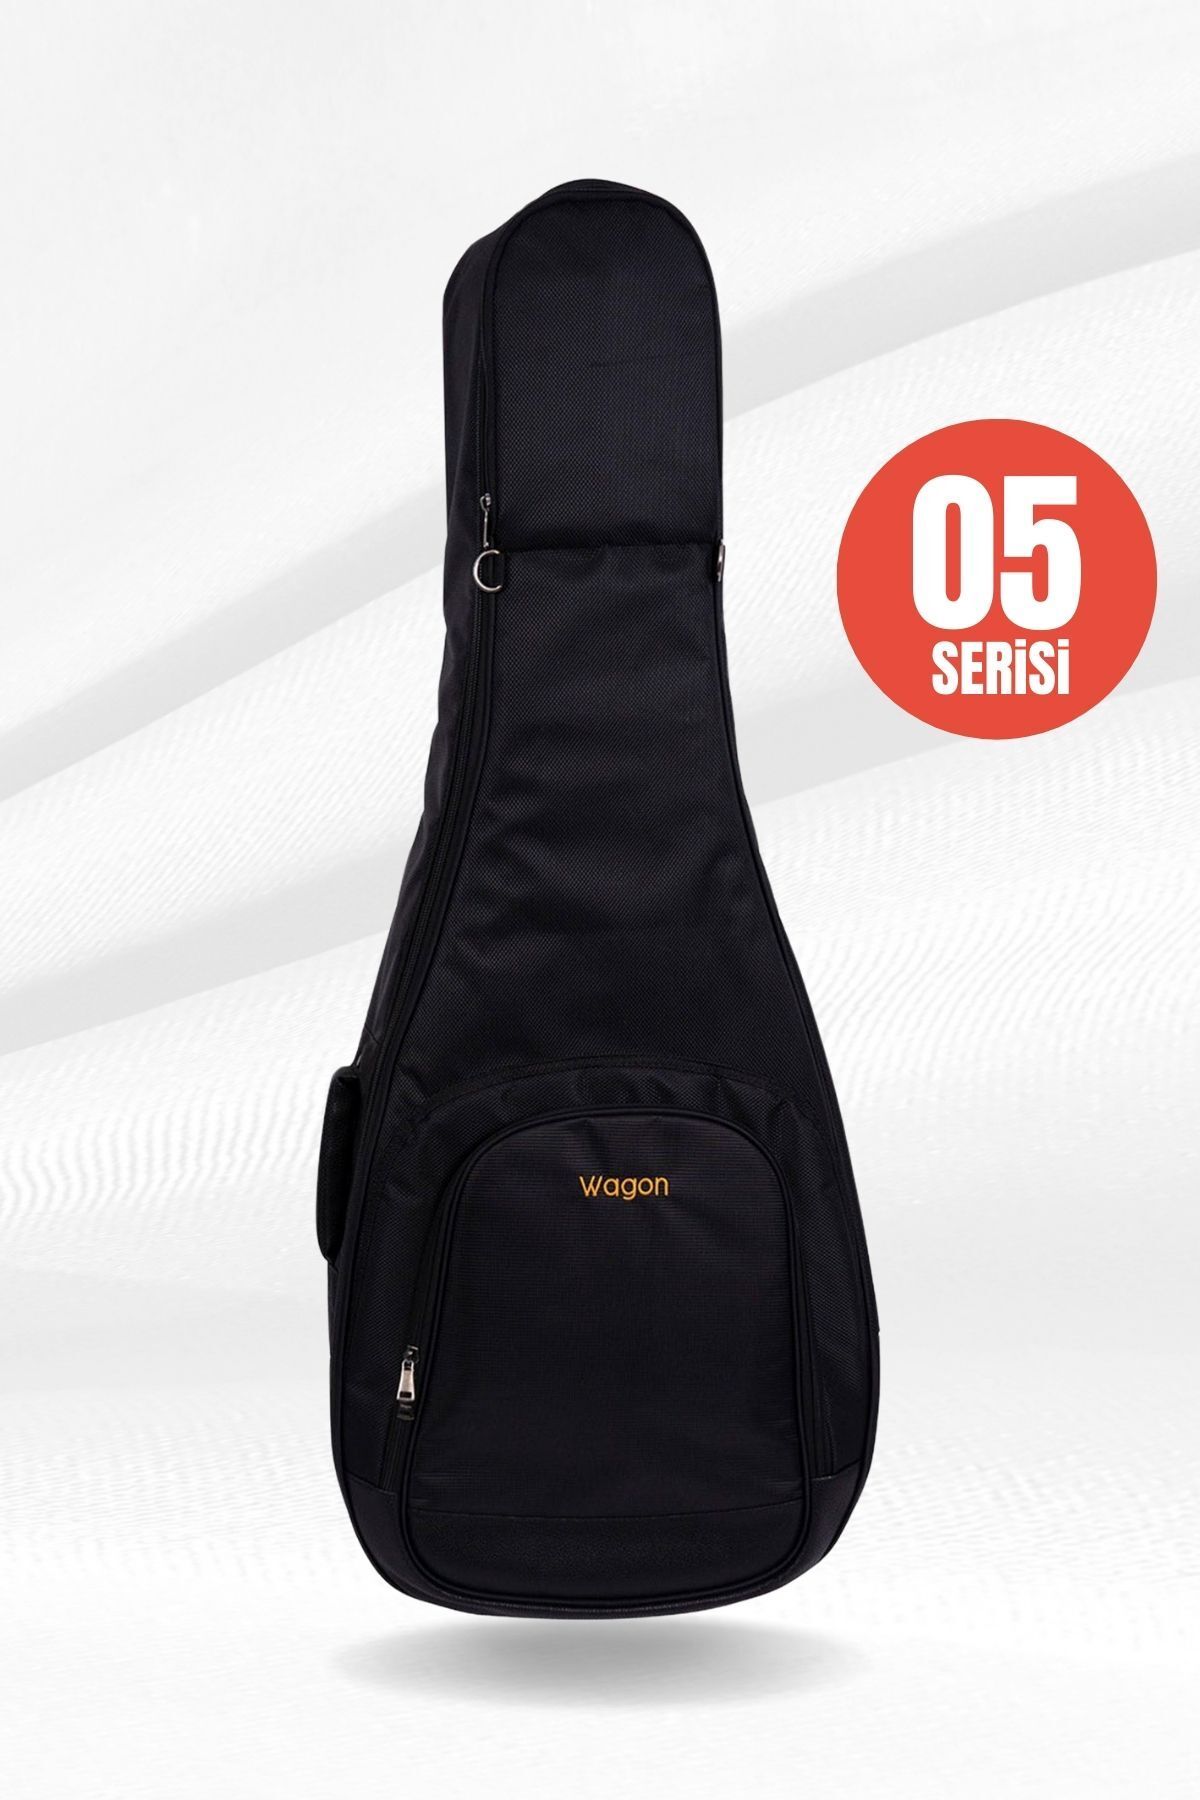 Wagon 05 Serisi Akustik Gitar Çantası - Siyah